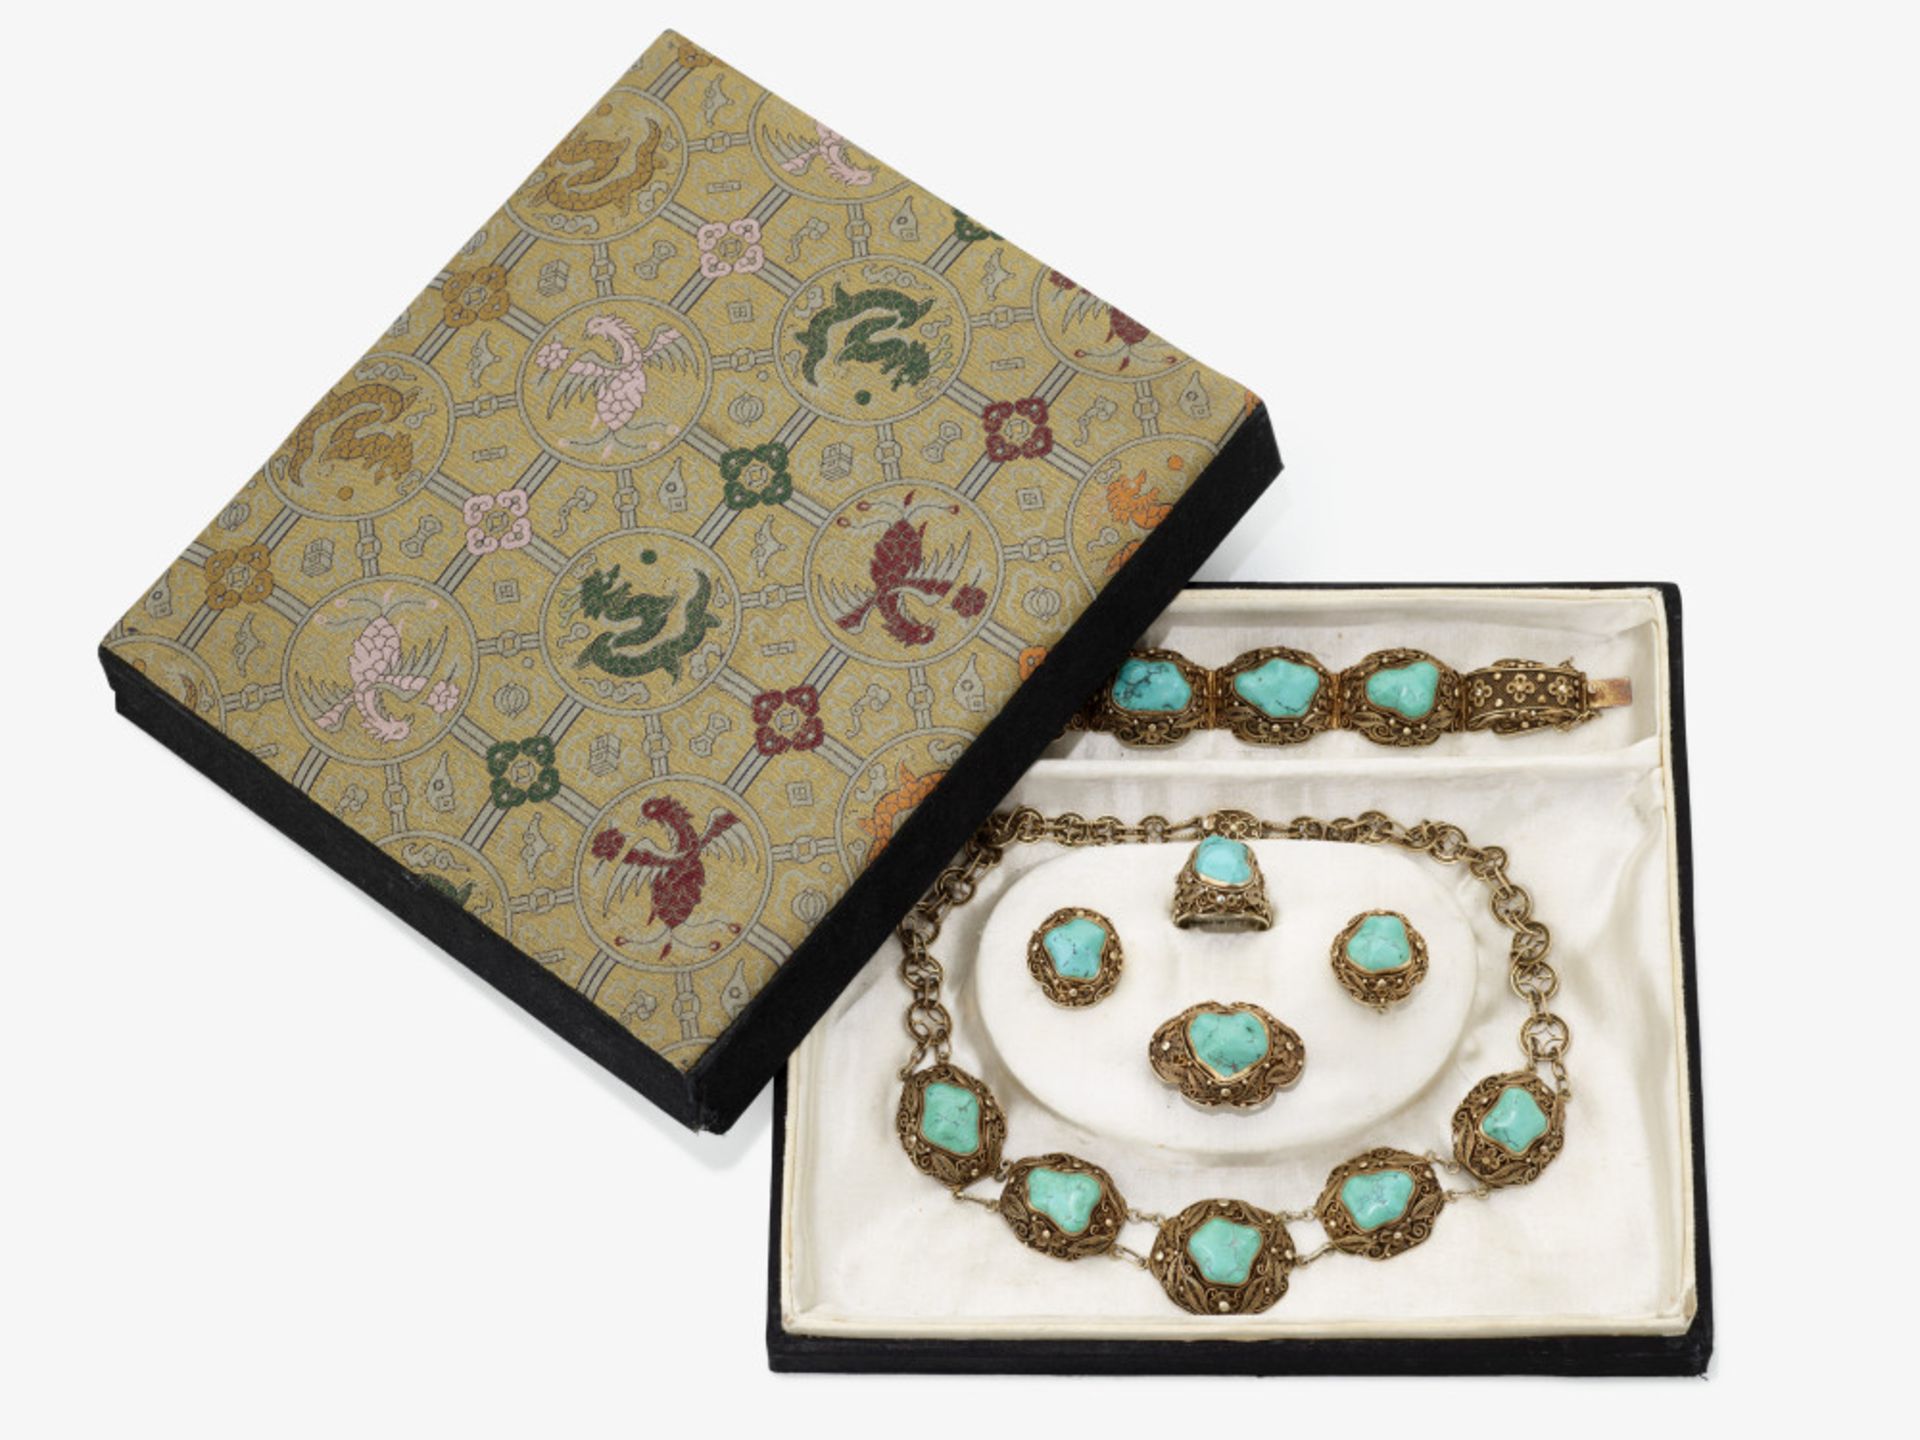 Garnitur mit Türkisen: bestehend aus Kette, Armband, Ring, Brosche und einem Paar Ohrringe - Bild 11 aus 14